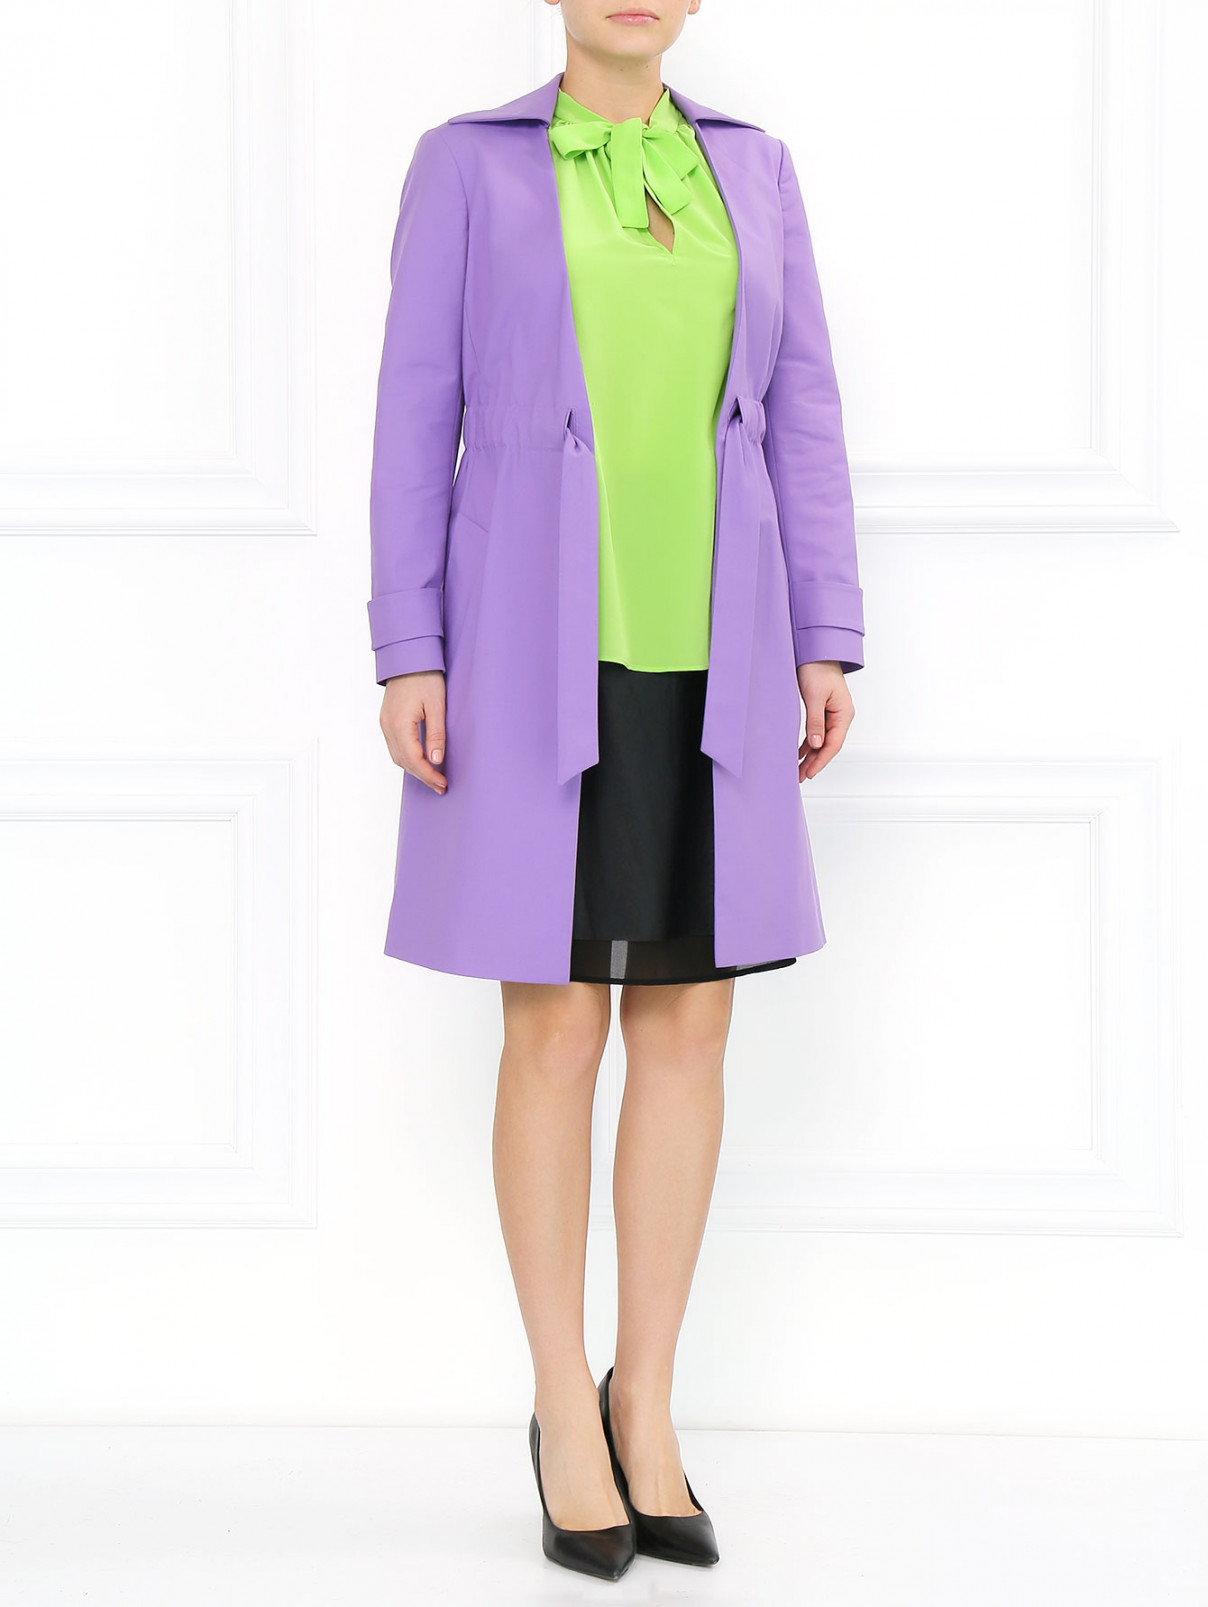 Блуза из шелка с бантом Moschino Cheap&Chic  –  Модель Общий вид  – Цвет:  Зеленый